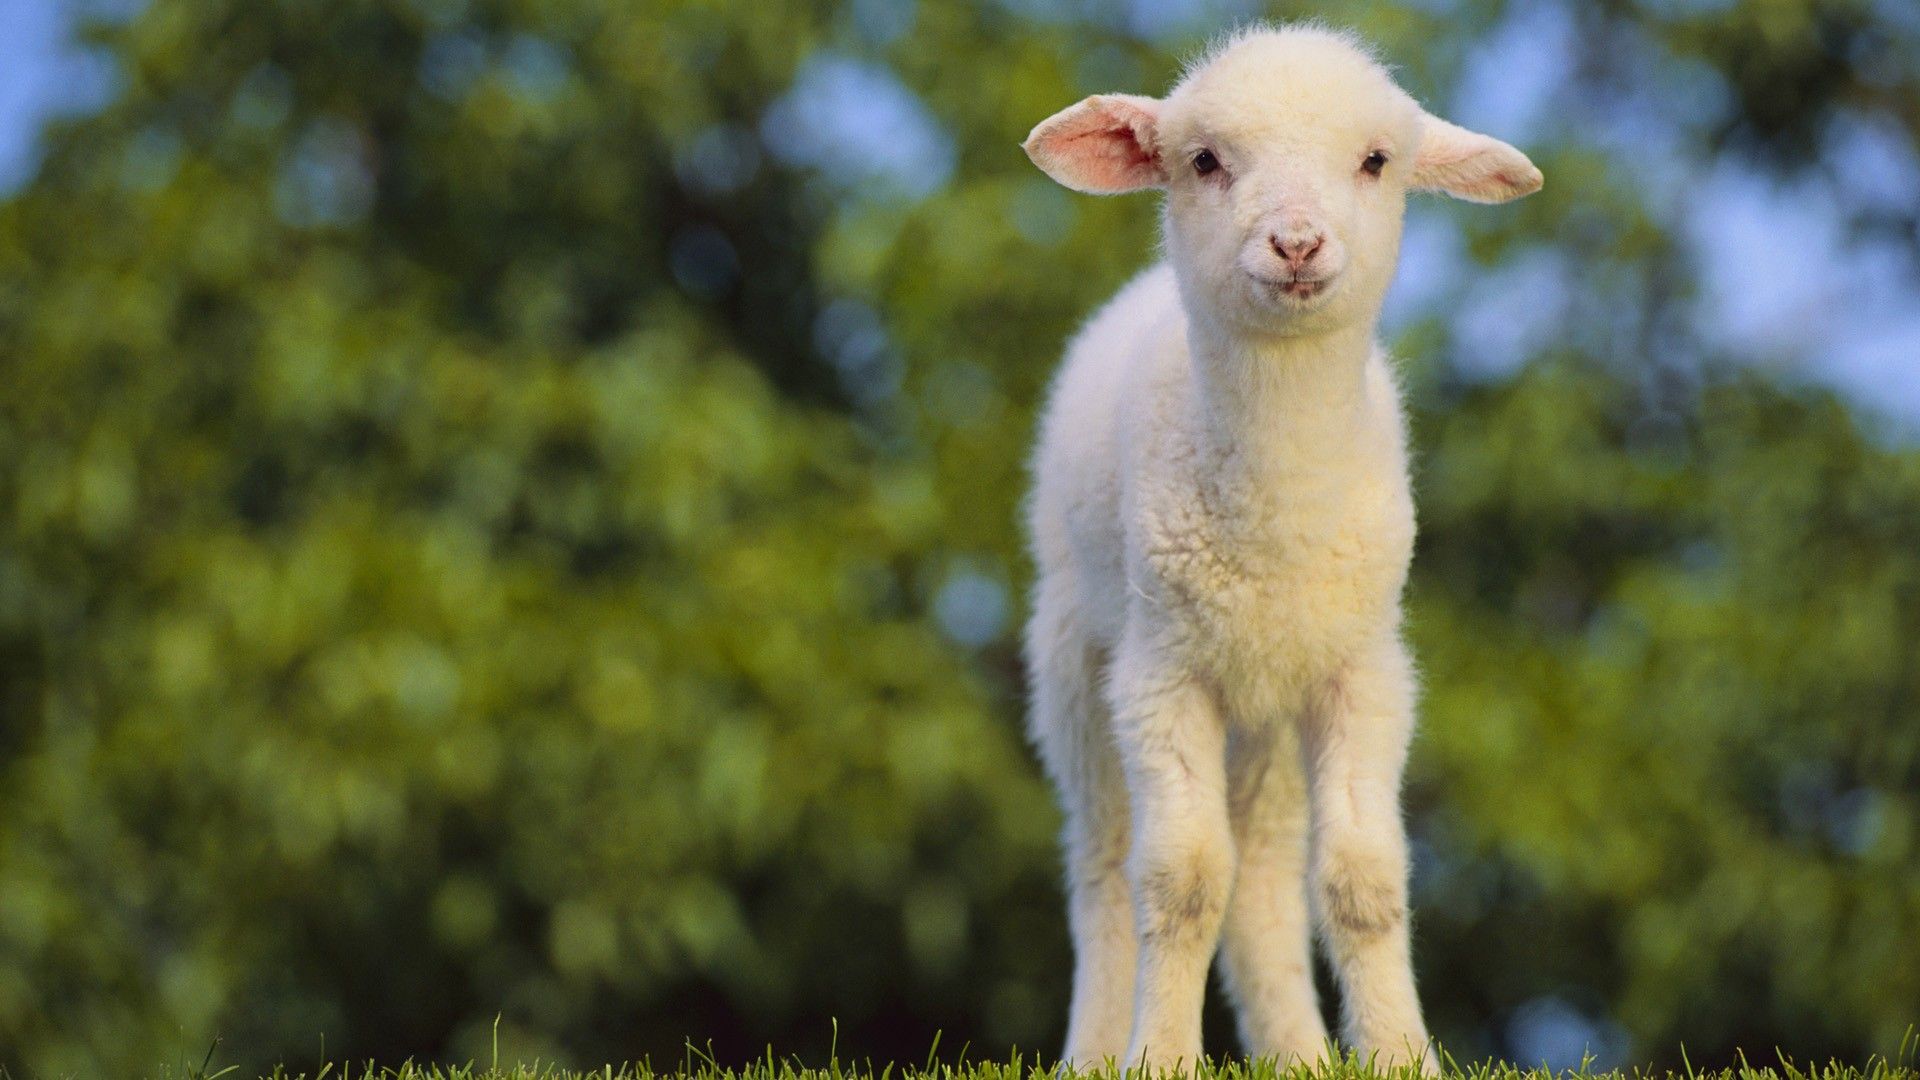 Baby Lamb Wallpaper Image Sheep Animals